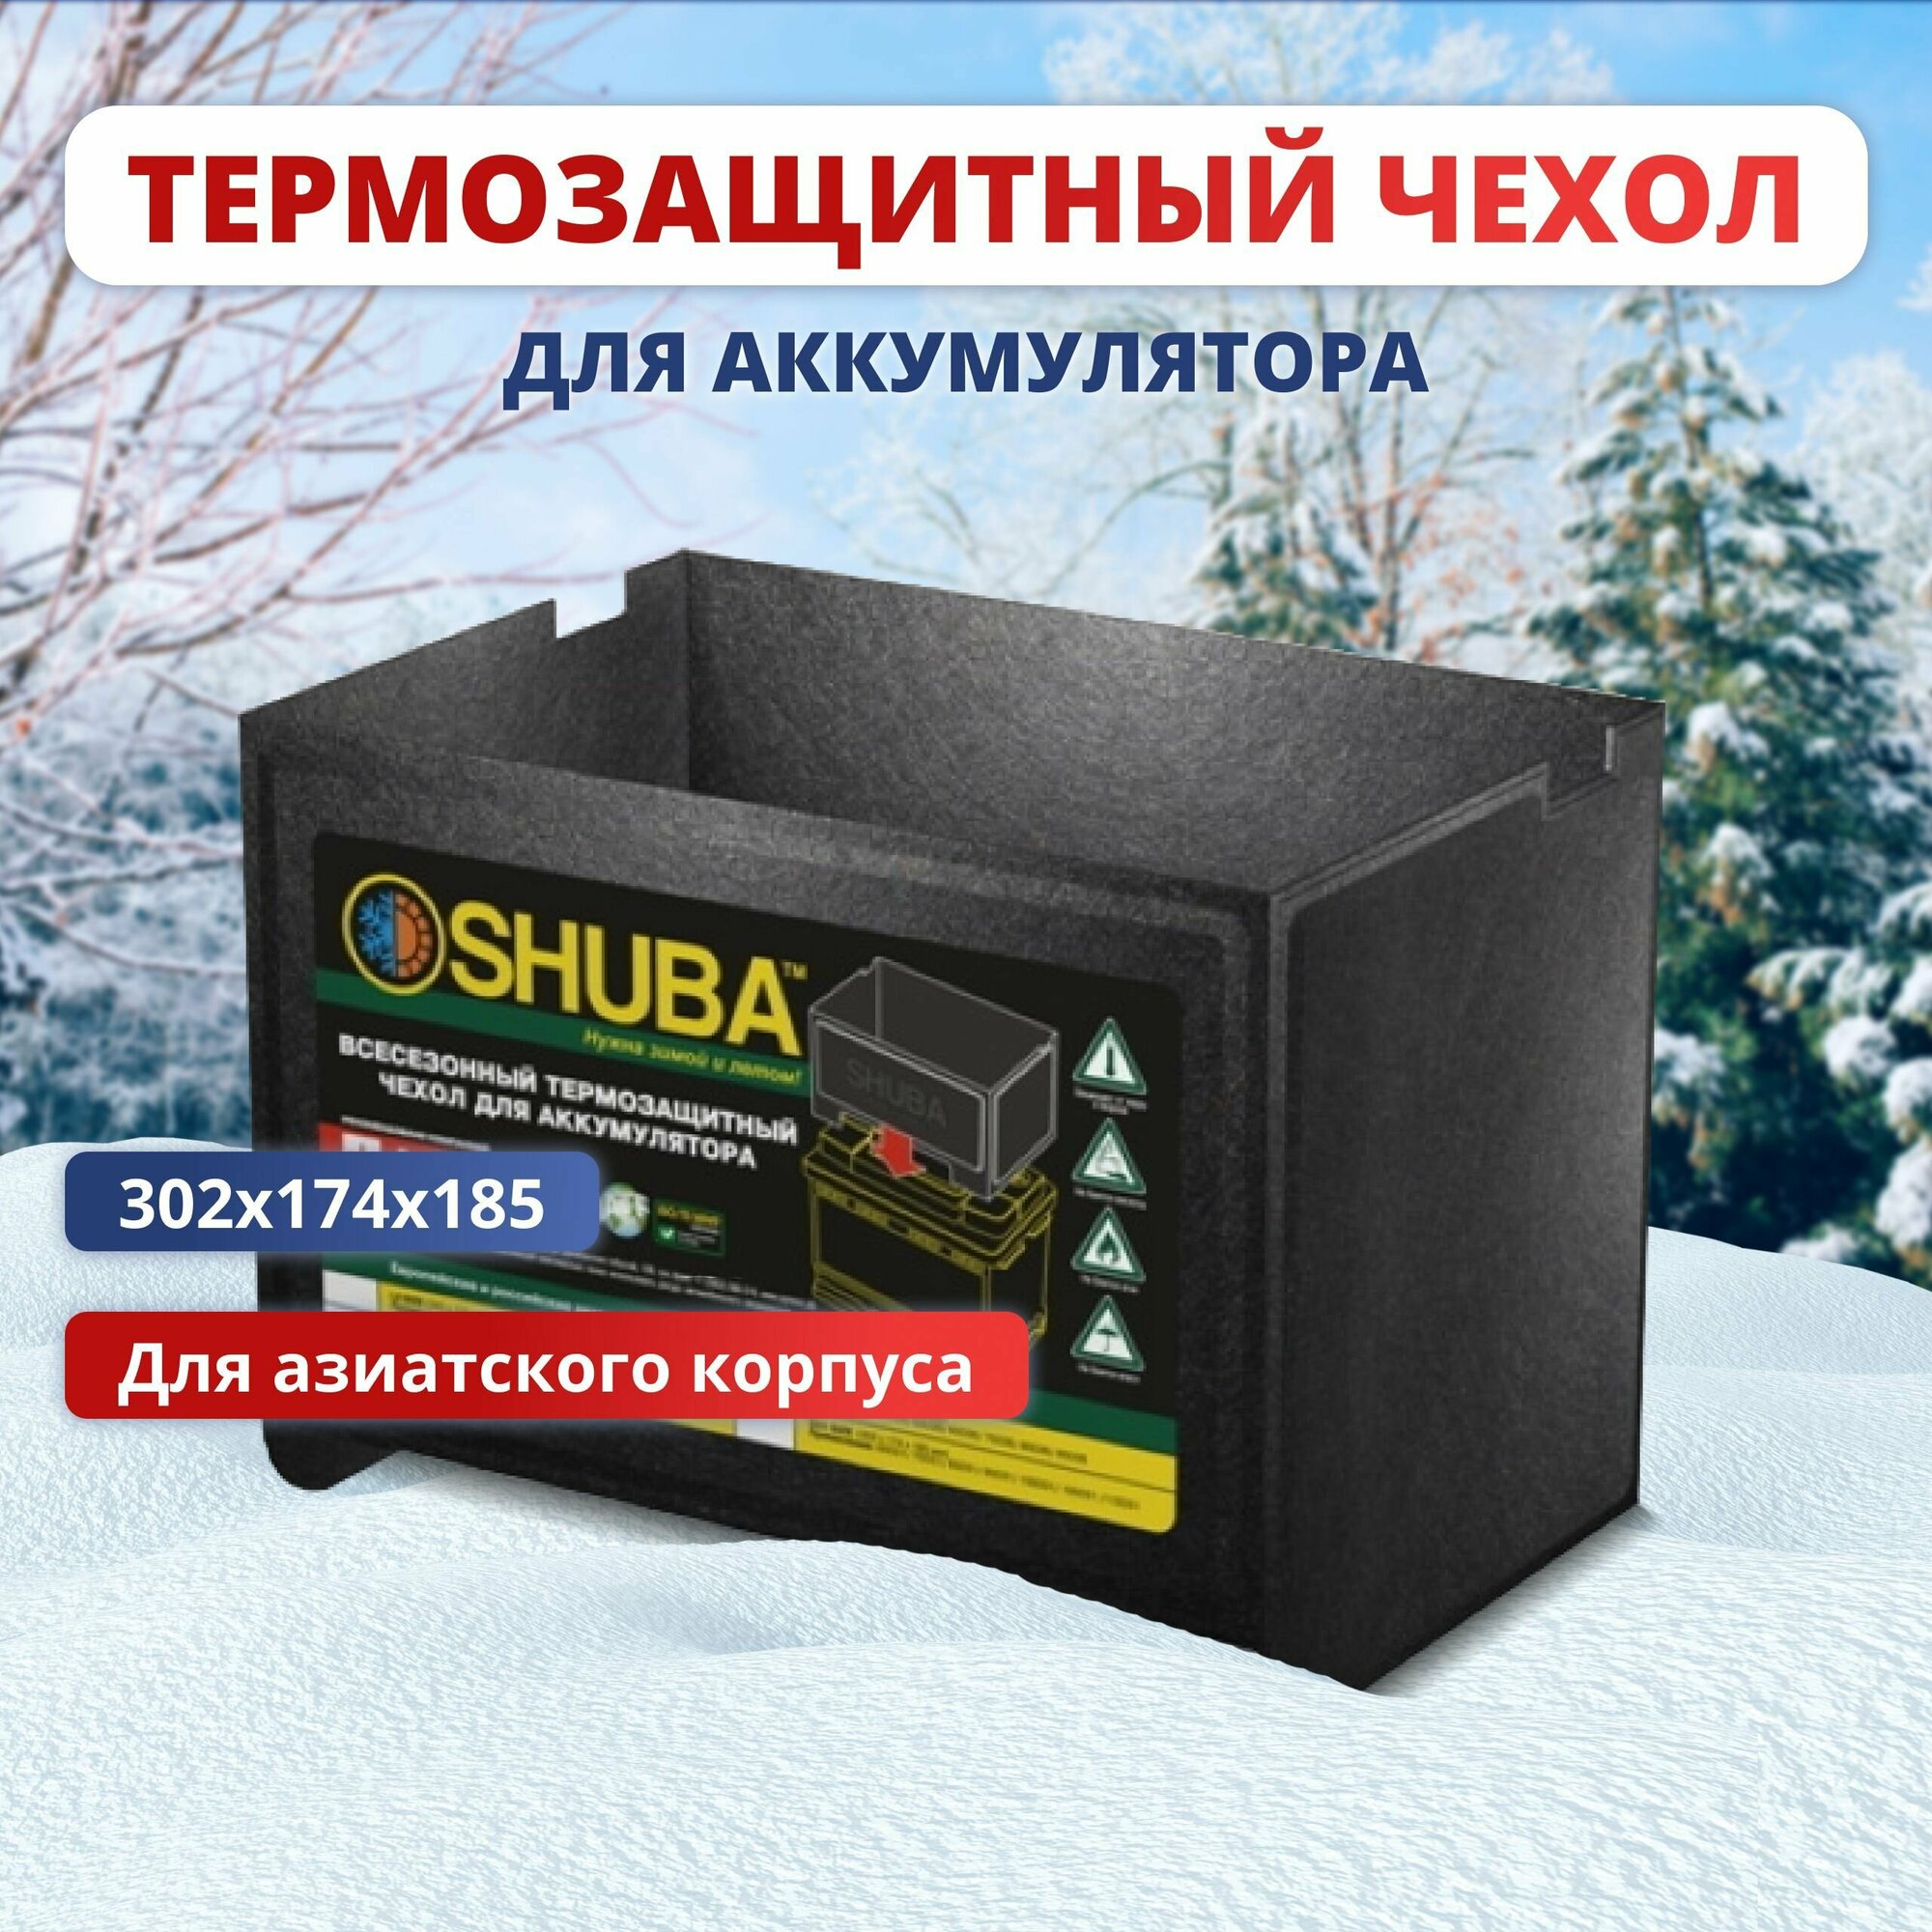 Всесезонный термозащитный чехол для аккумулятора автомобиля SHUBA D31 термокейс утеплитель чехол на акб авто 302x174x185